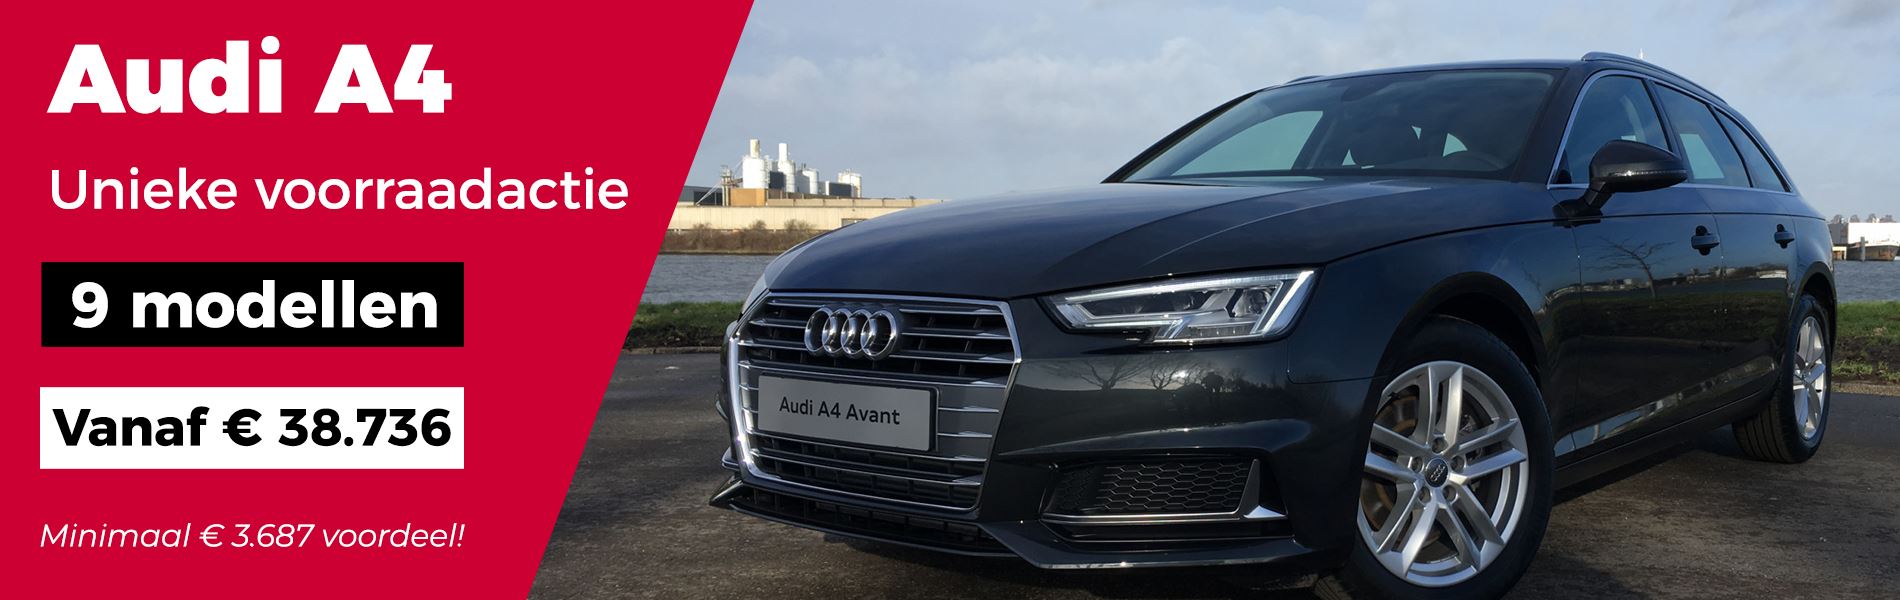 Reiziger commentaar Afsnijden Audi A4 prijsverlaging | Ames